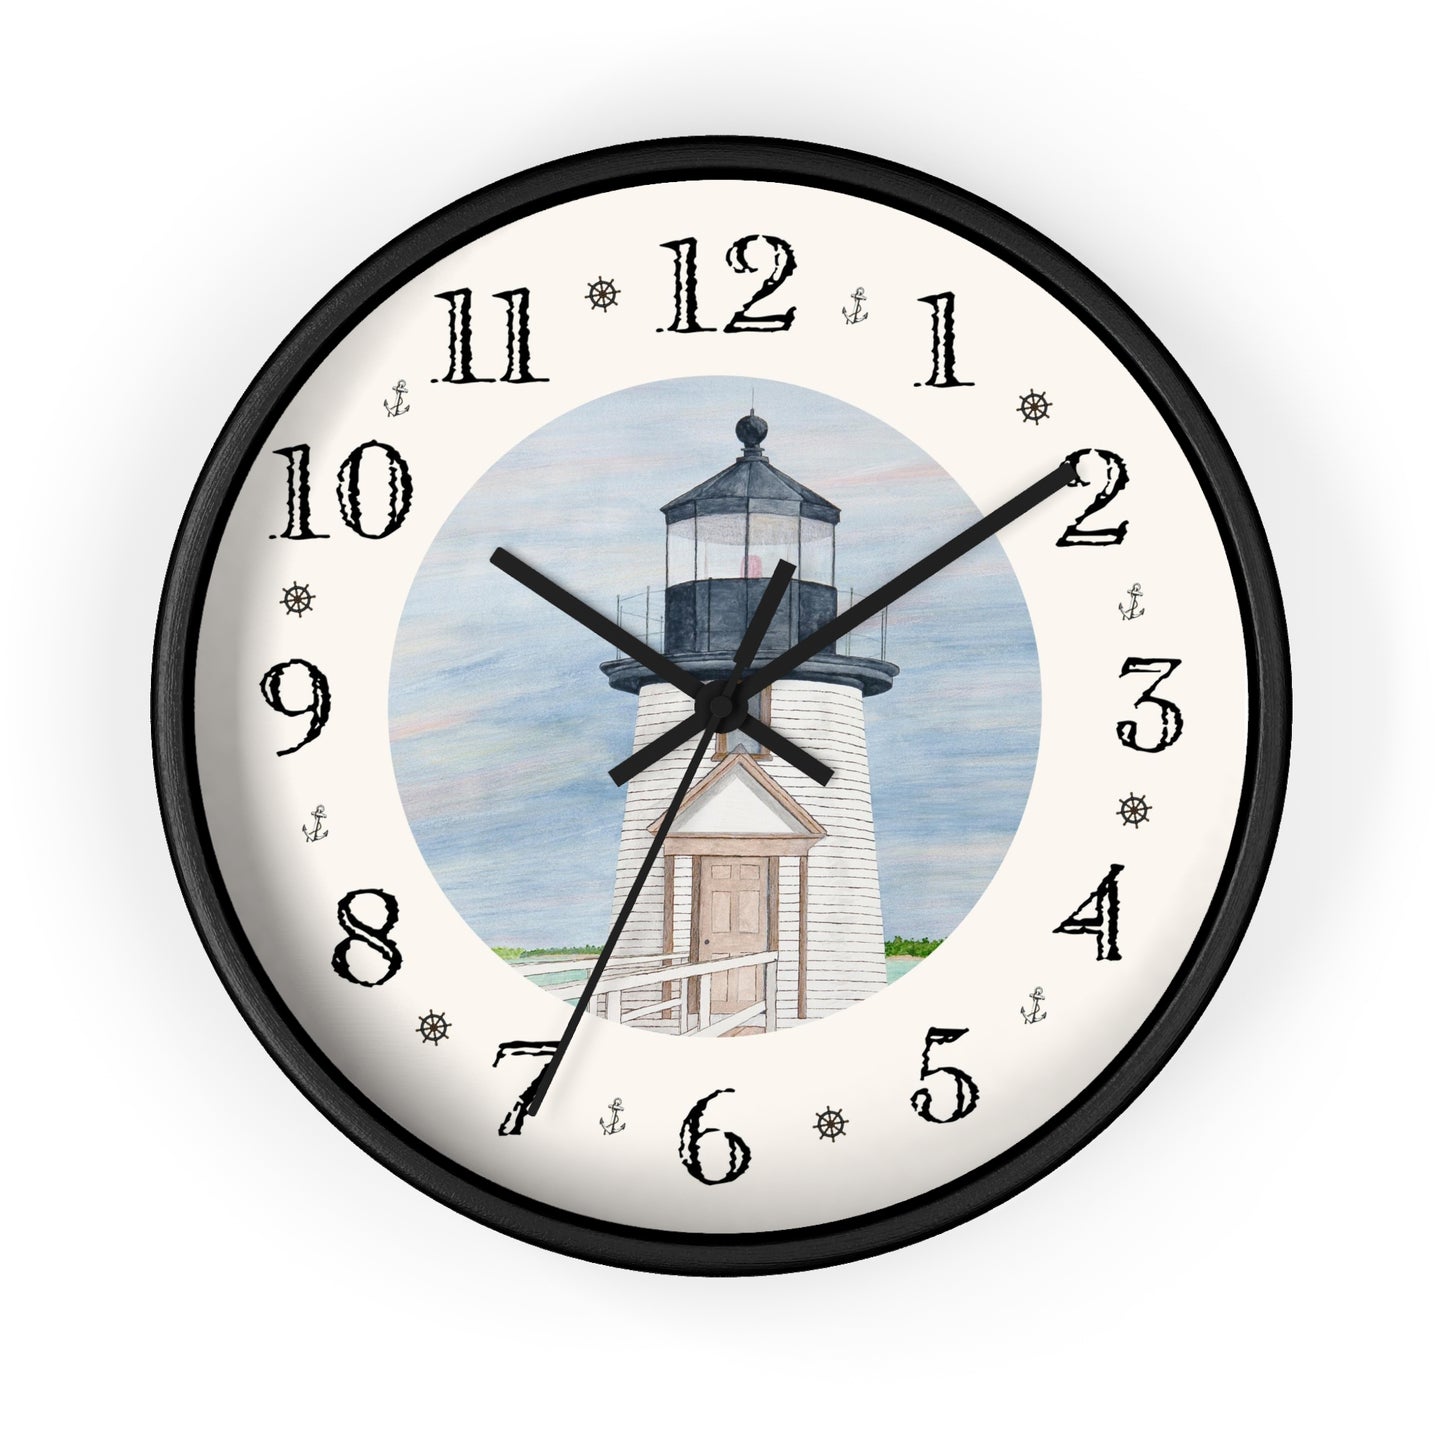 Evening Light At Brant Point Heirloom Designer Clock